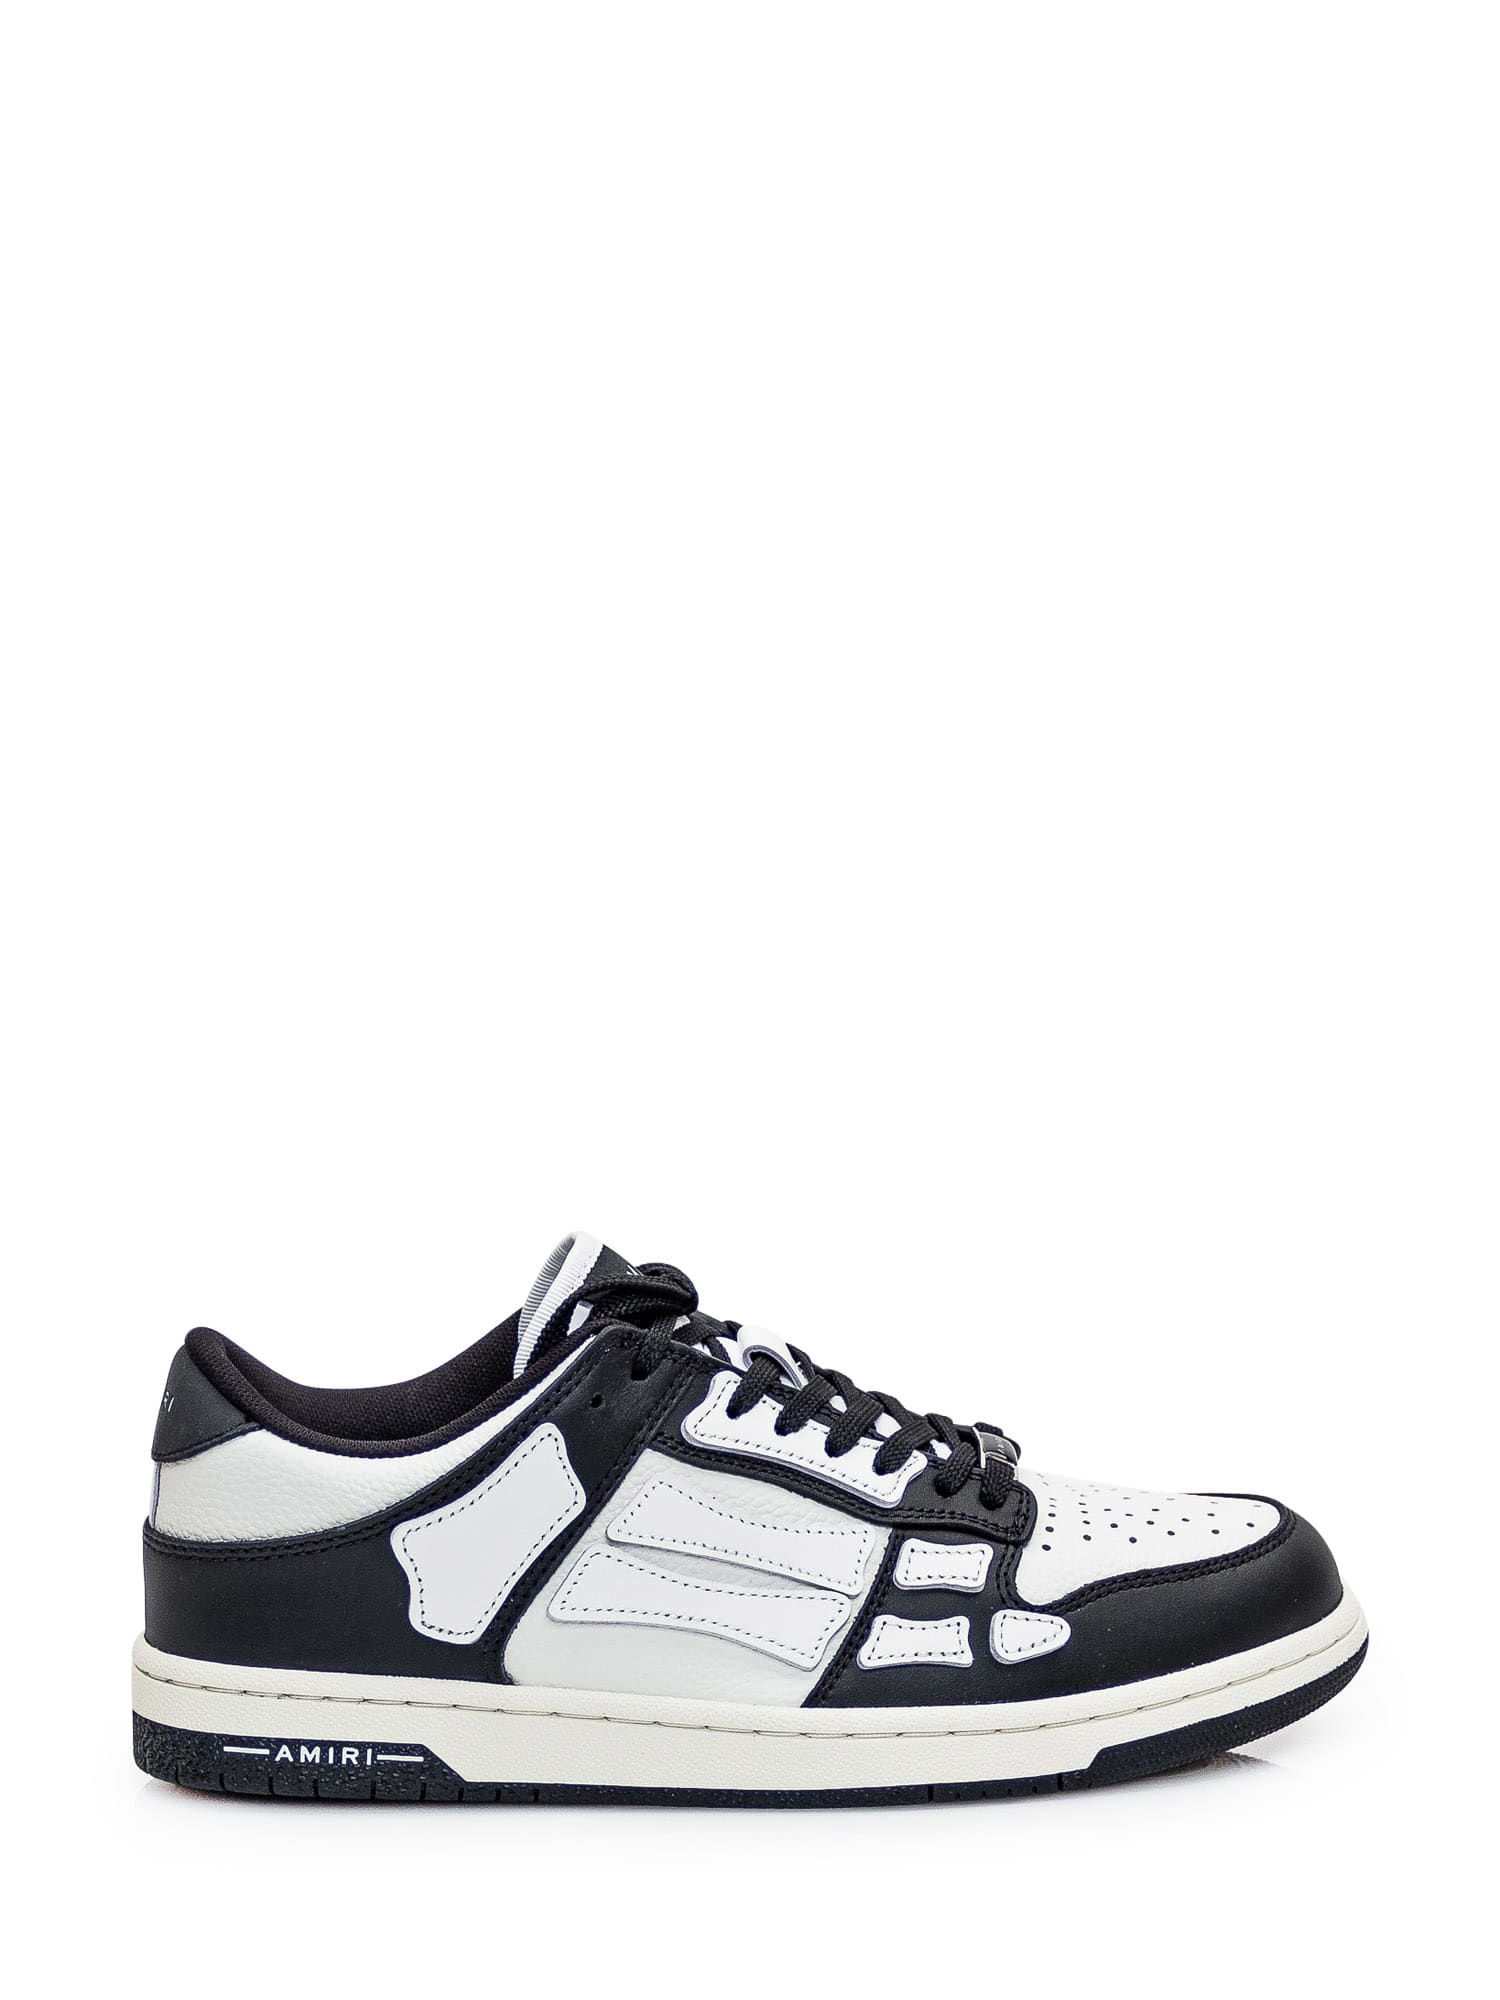 Shop Amiri Skel Top Low Sneaker In Black/white